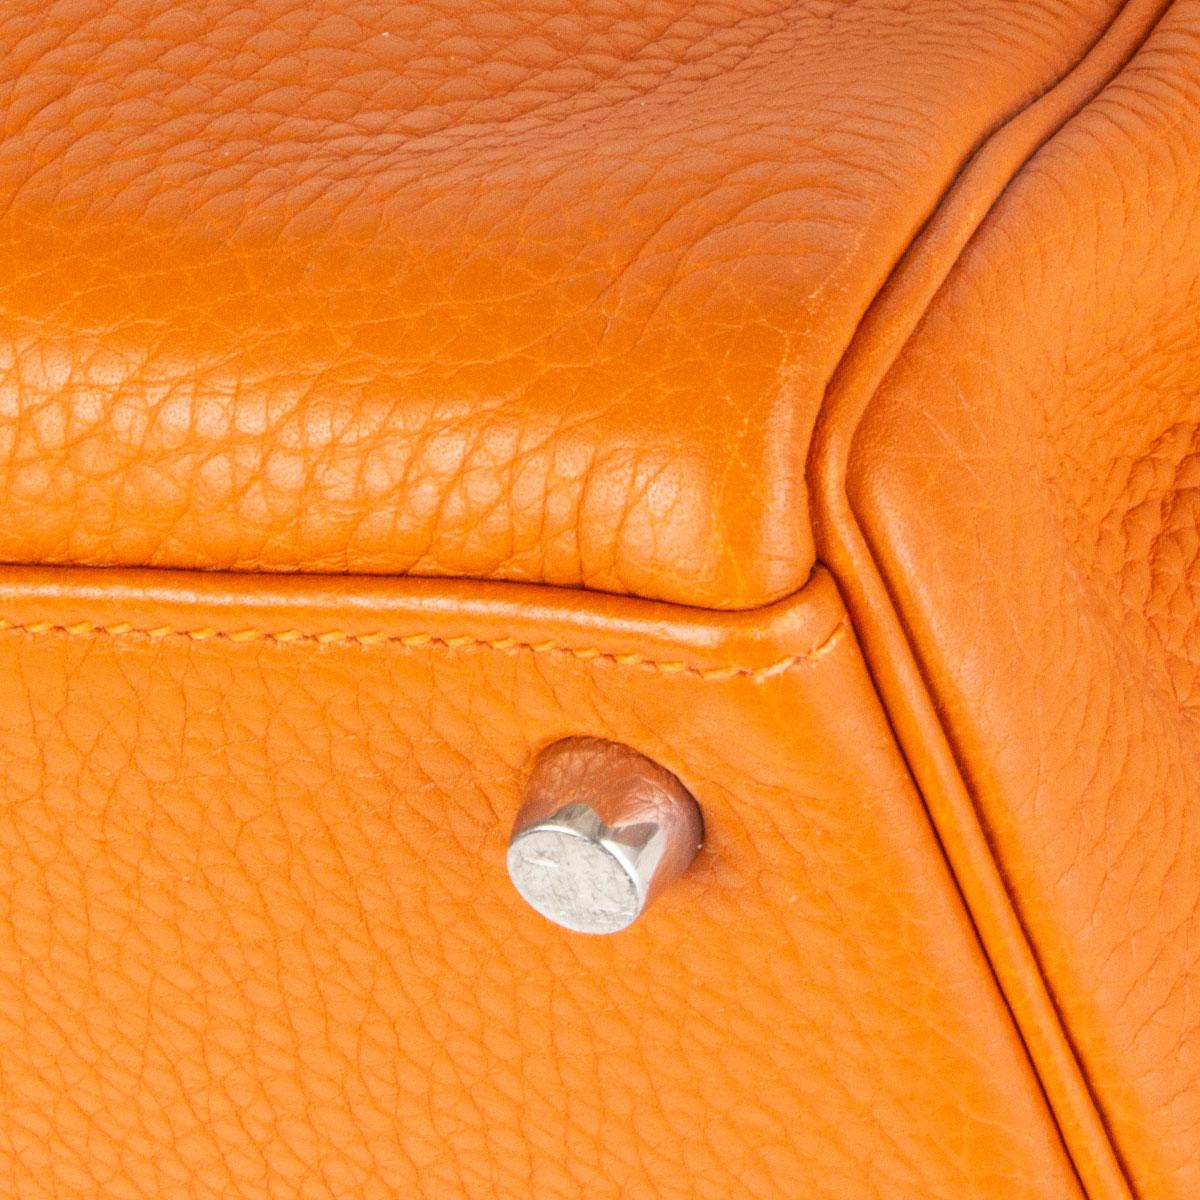 HERMES Potiron orange Clemence leather KELLY 35 RETOURNE Bag 4